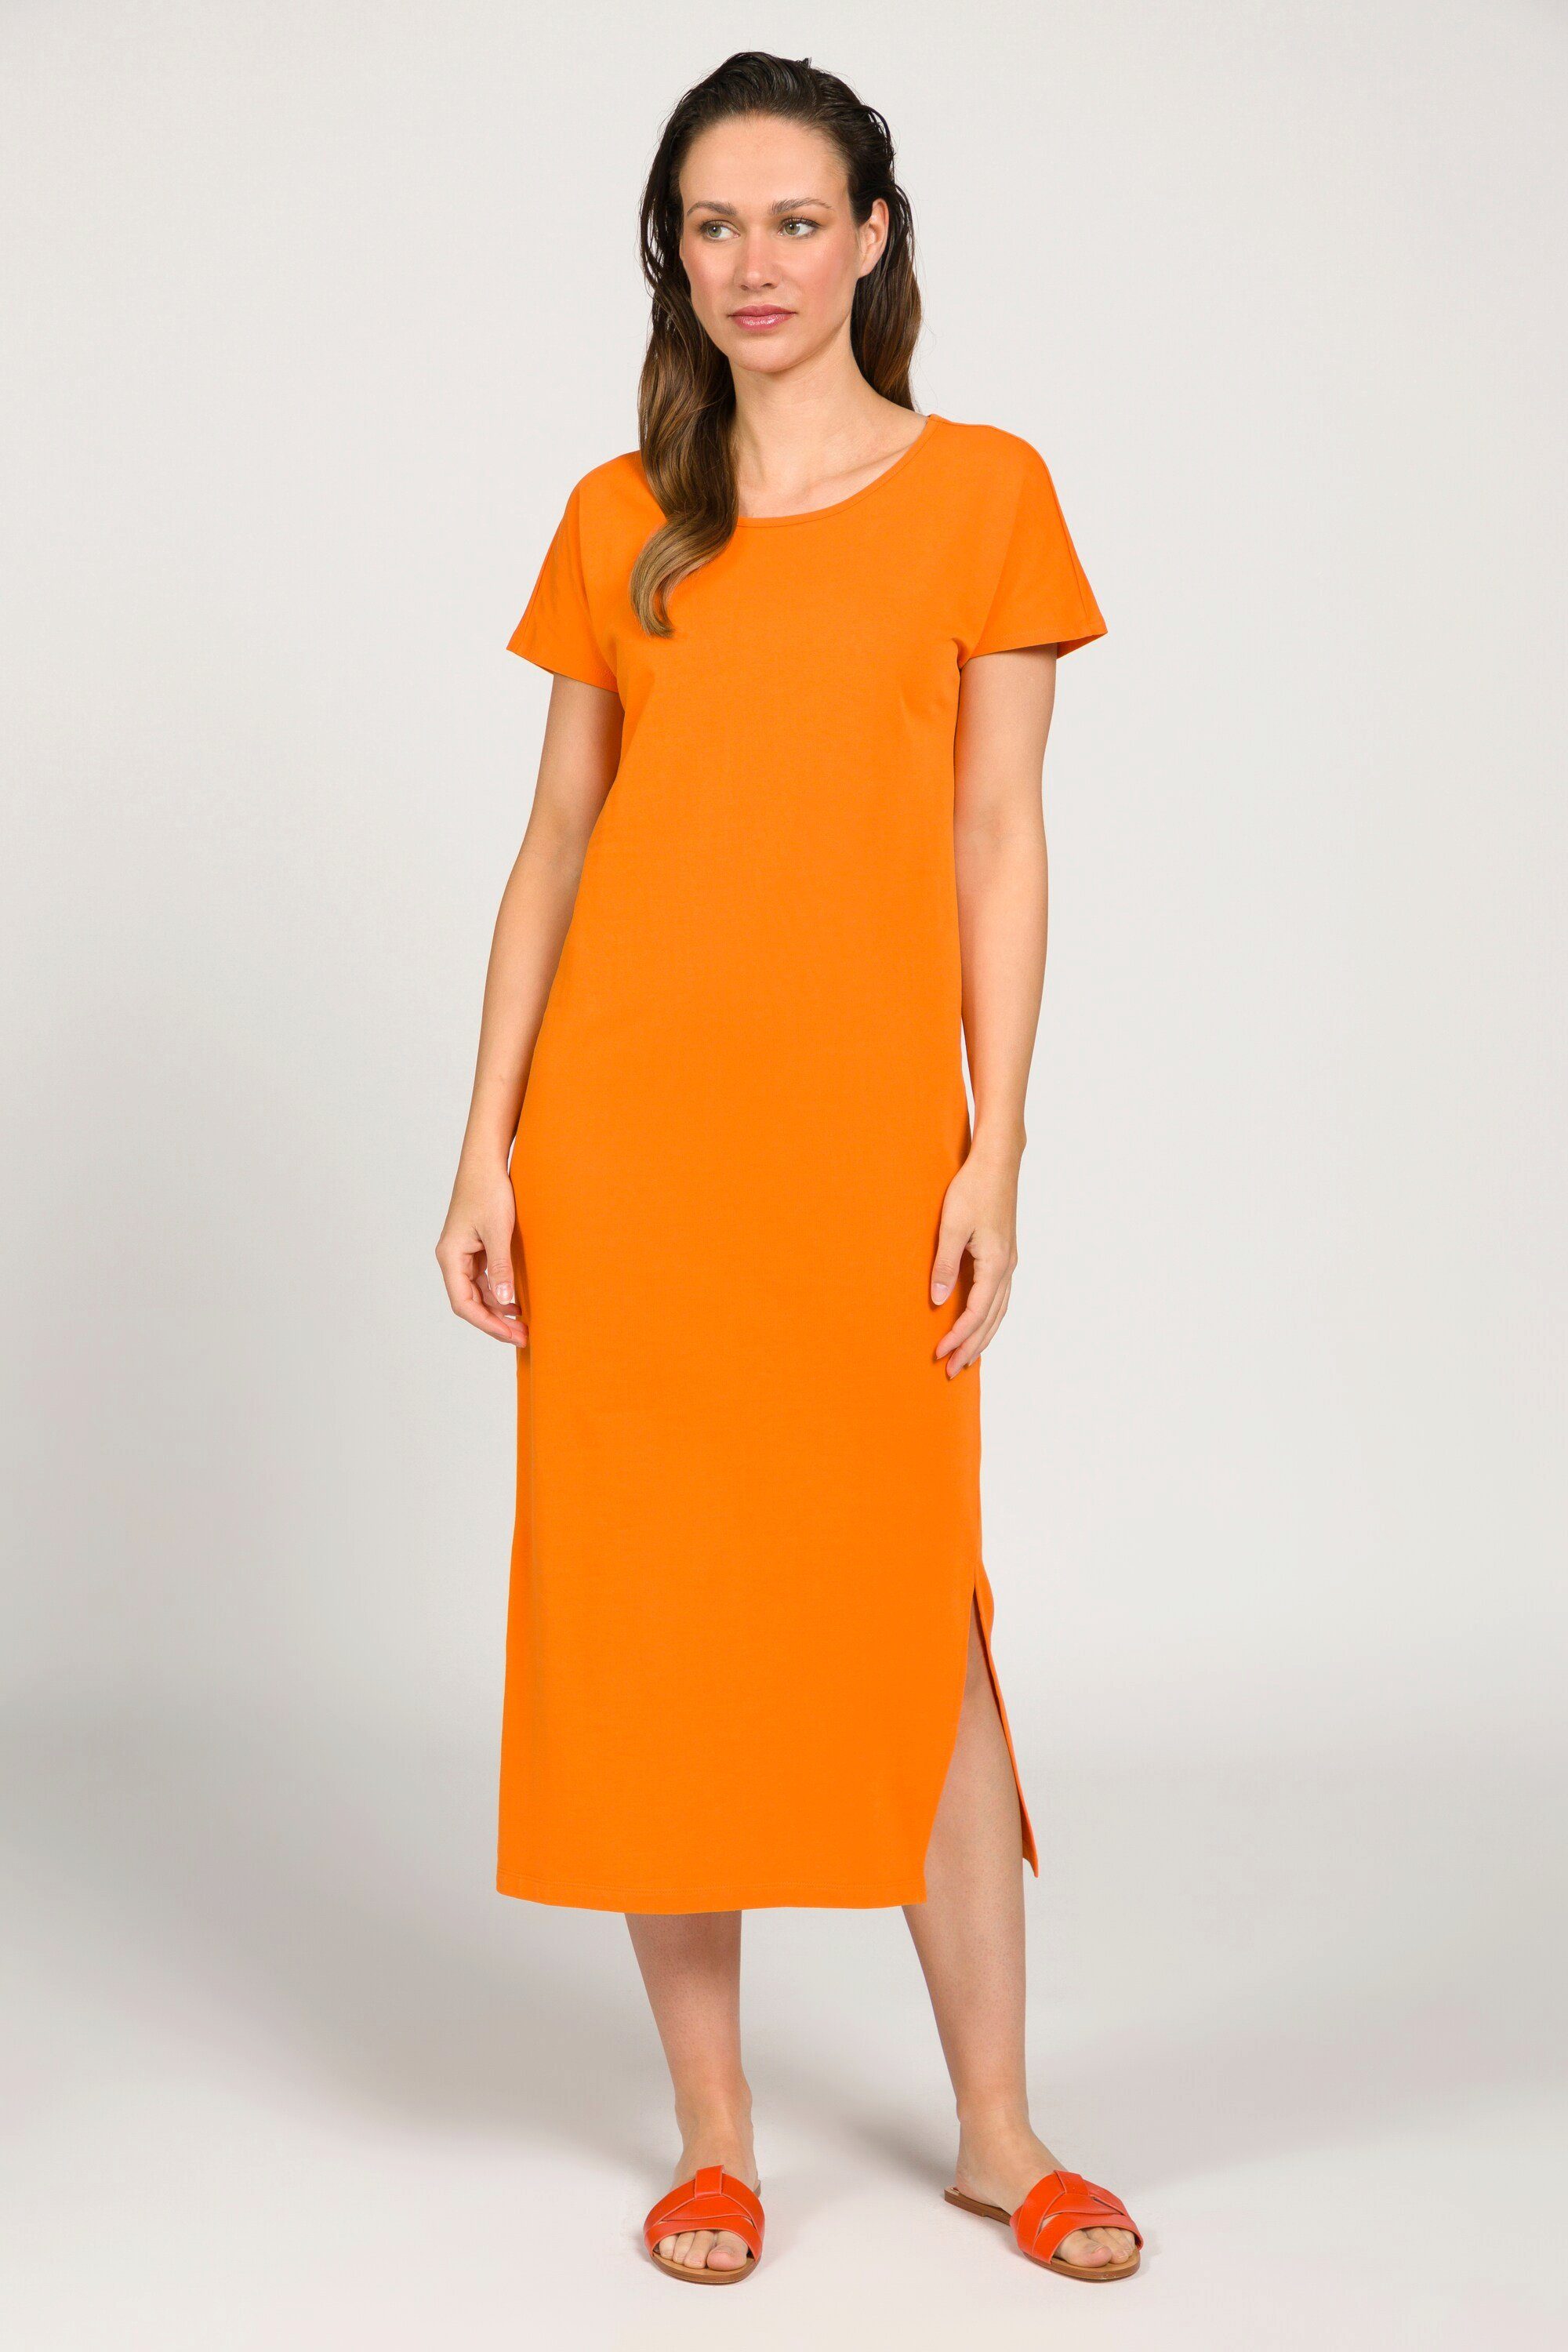 Gina Laura Jerseykleid Kleid Jersey ärmellos Seitenschlitze orange Rundhals